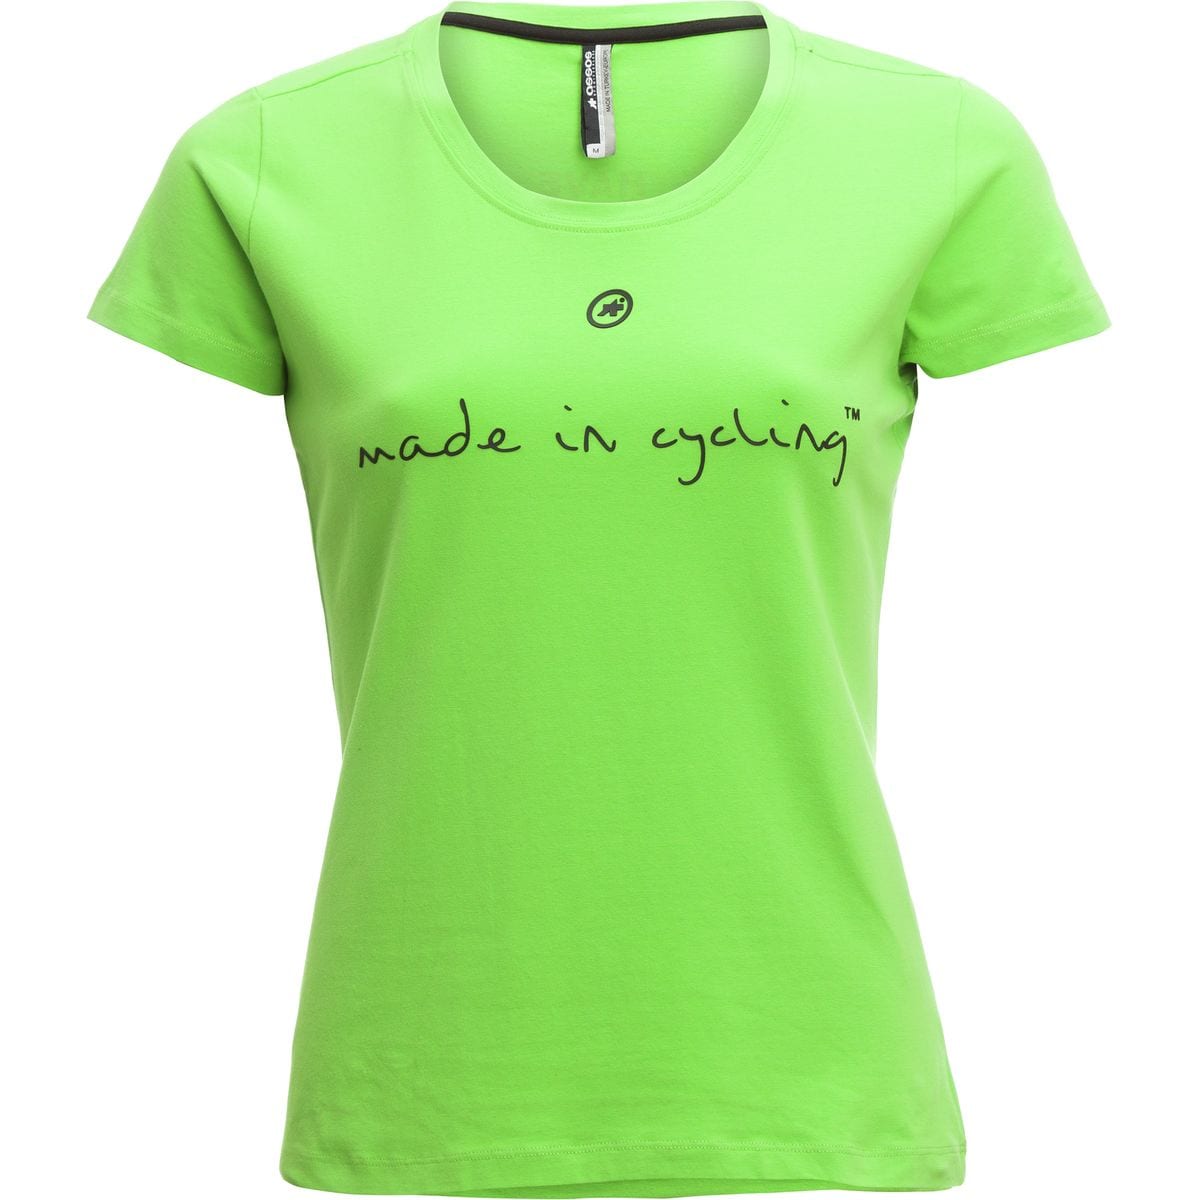 Assos Made in Cycling T-shirt - Women's